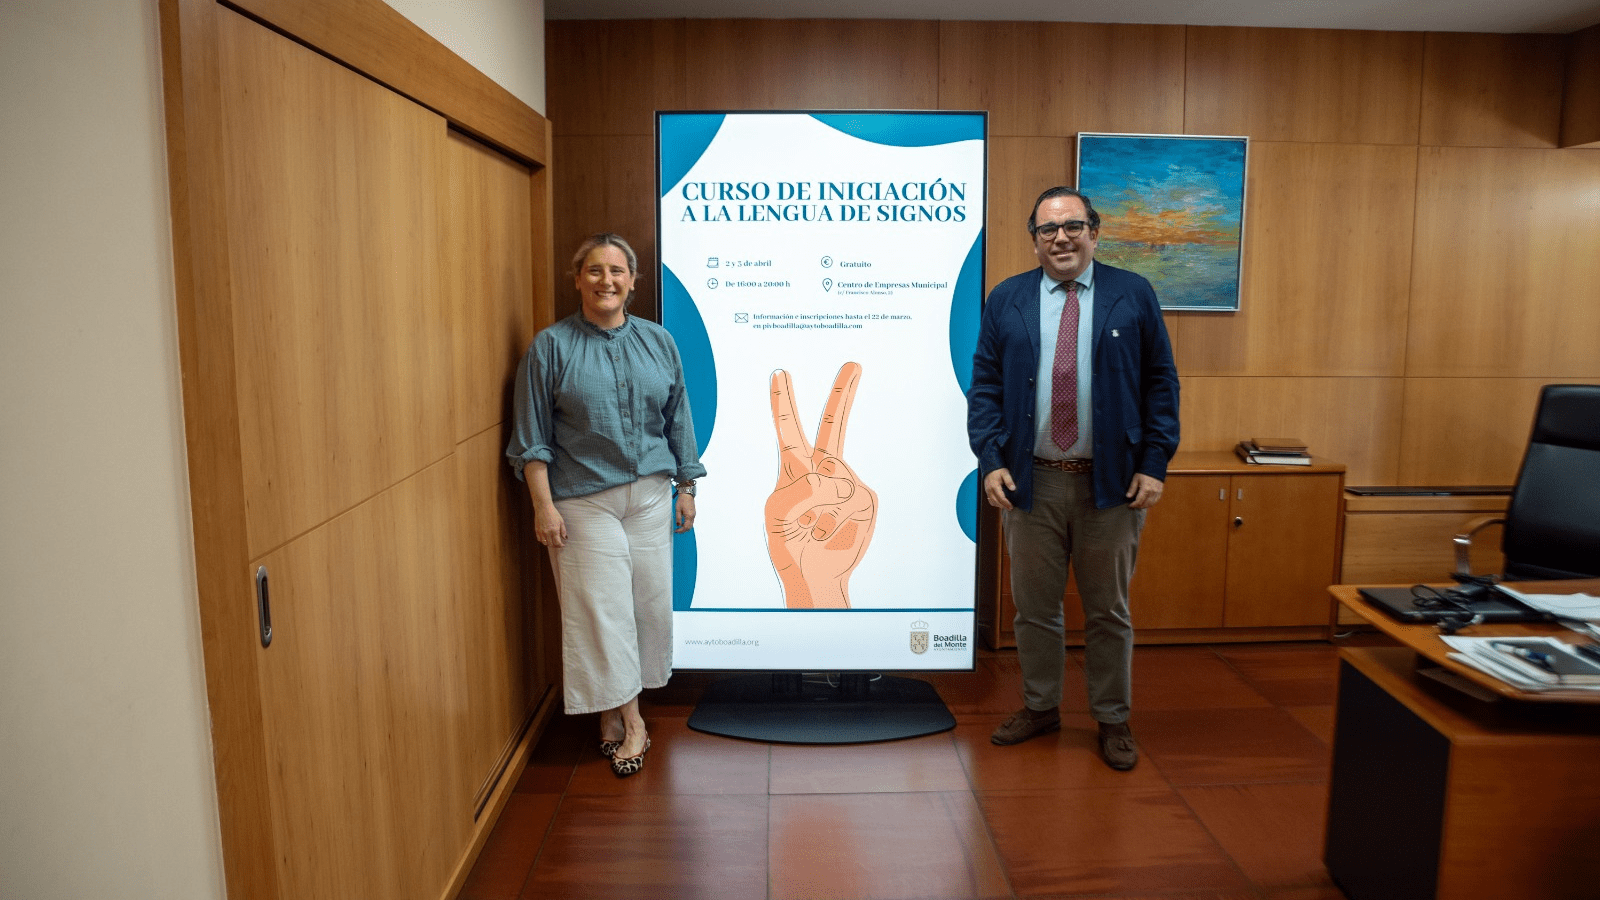 El Ayuntamiento ofrece un curso de iniciación a la lengua de signos española